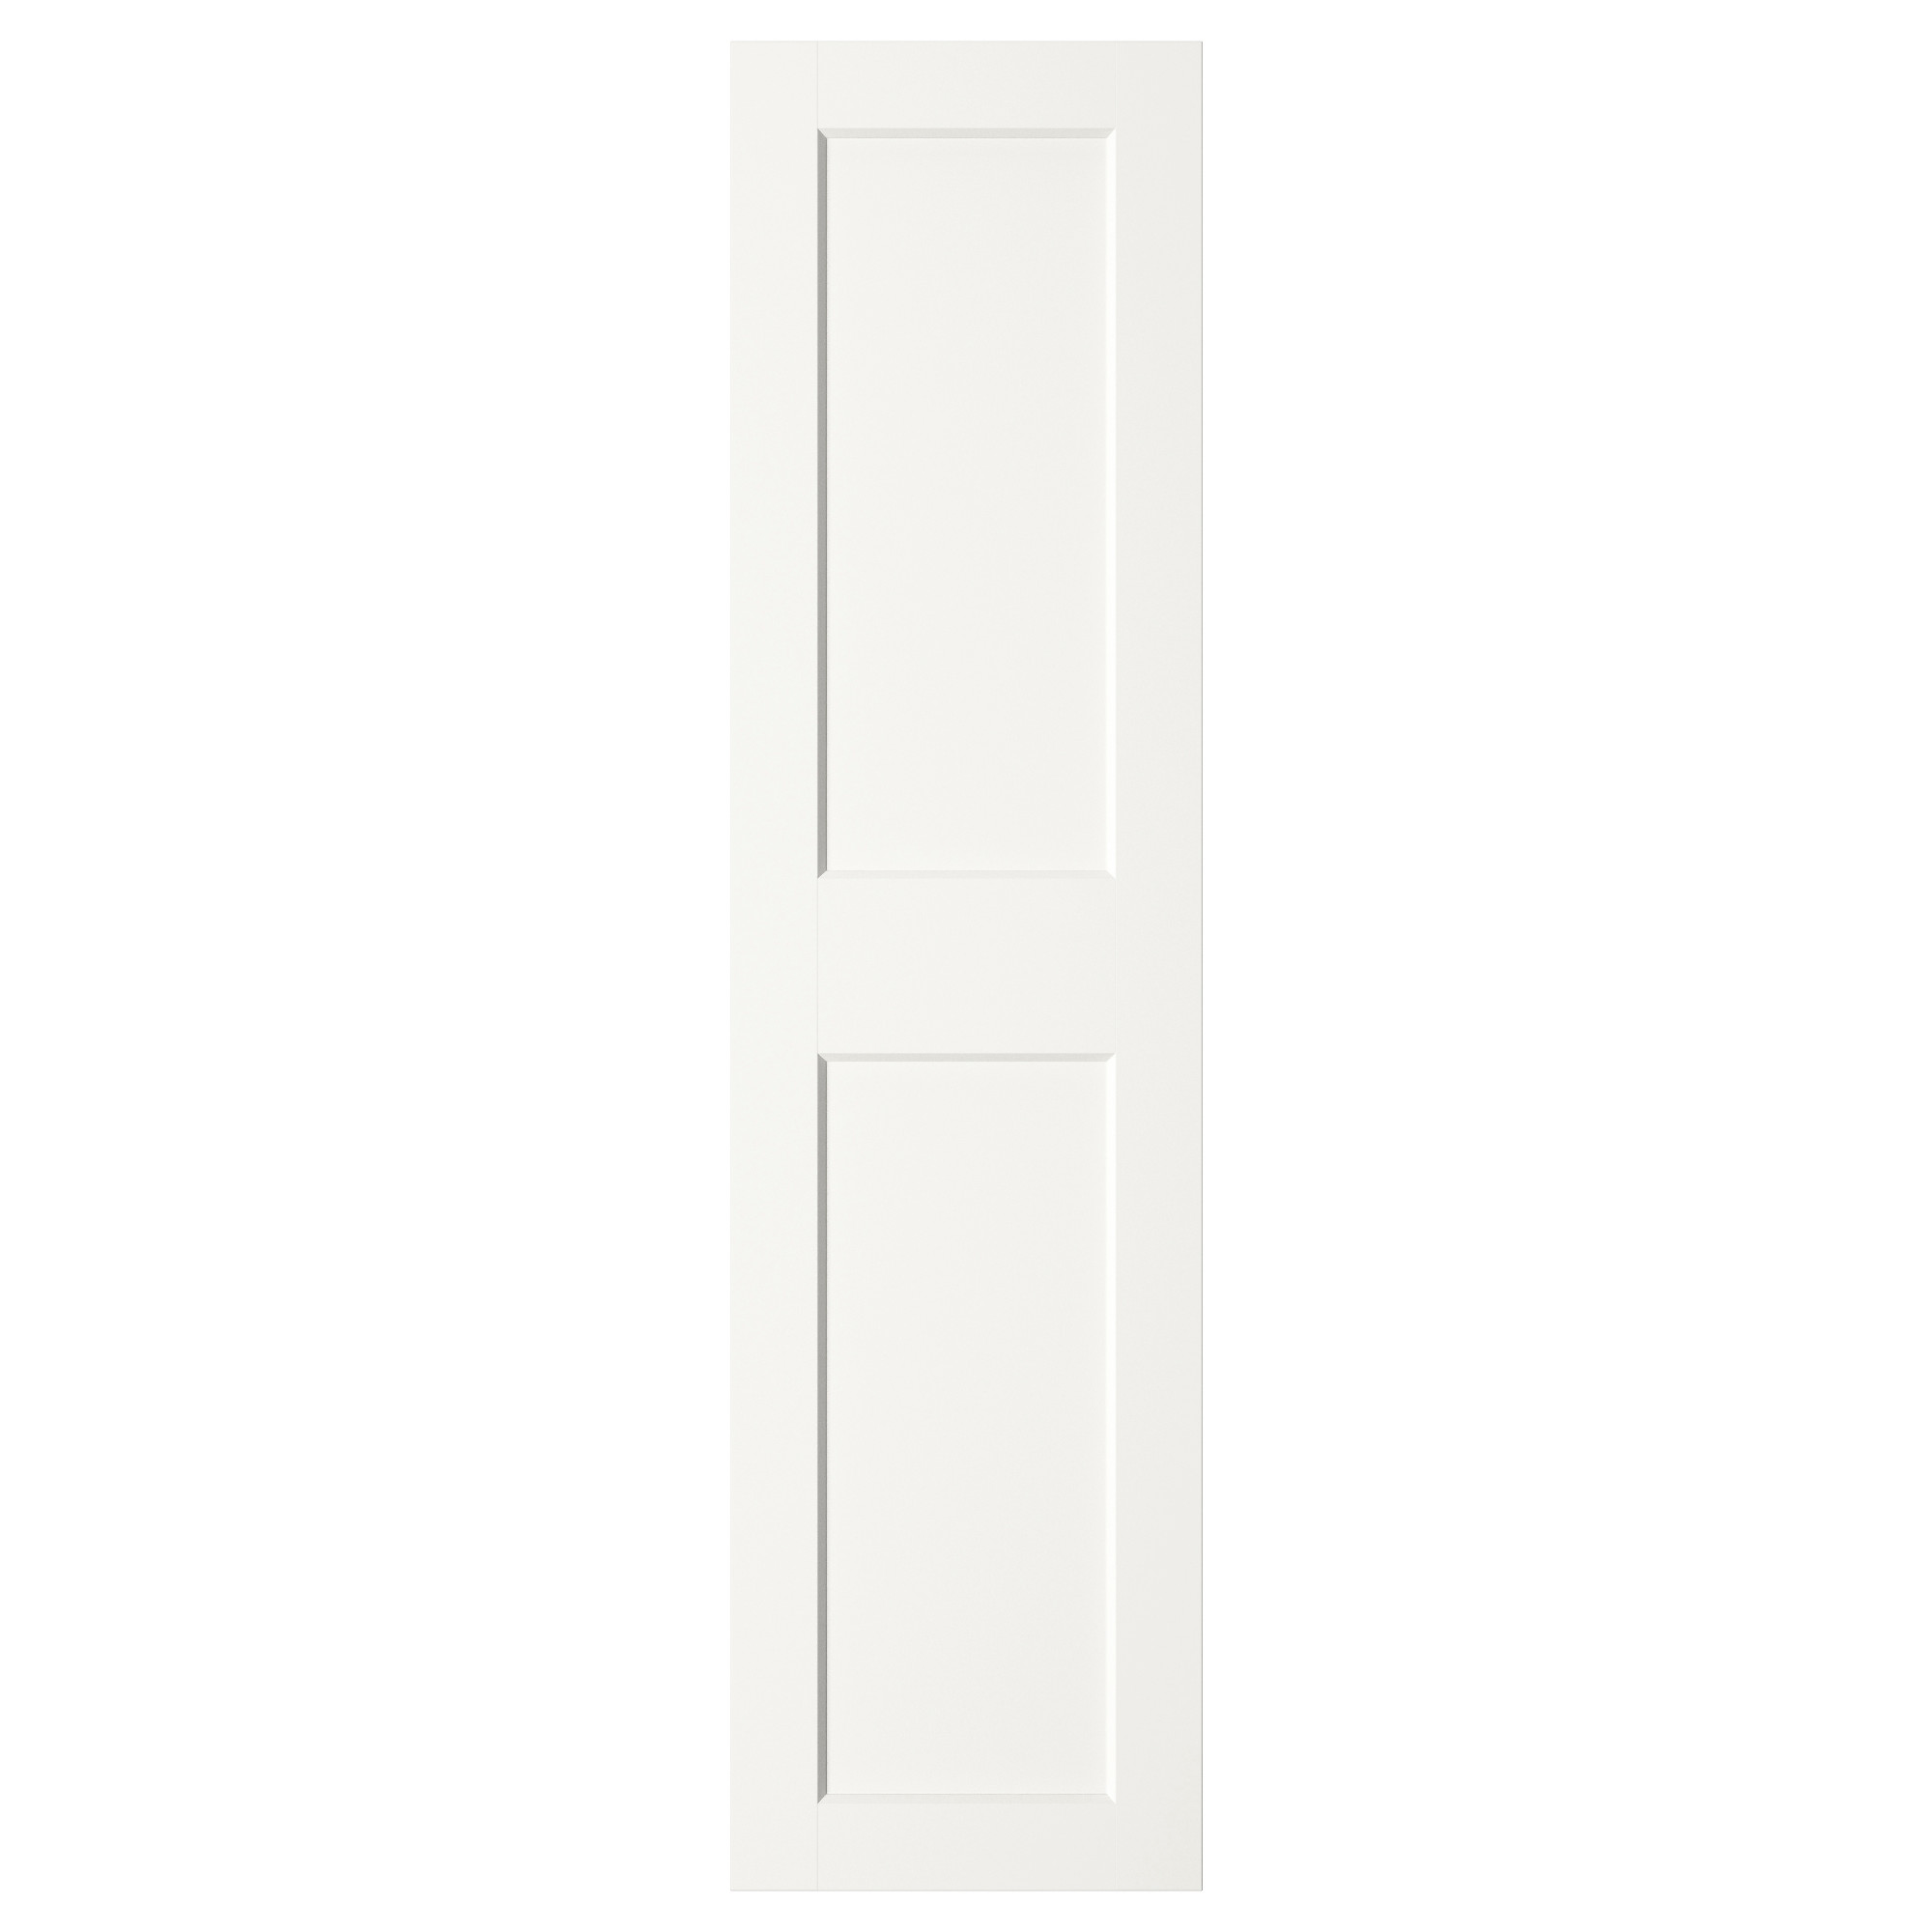 Двери пятьдесят. Двери Grimo ikea. Гримо дверь, белый, 50x229 см. Сэведаль дверь 60 200 икеа. Икеа ПАКС двери Grimo.